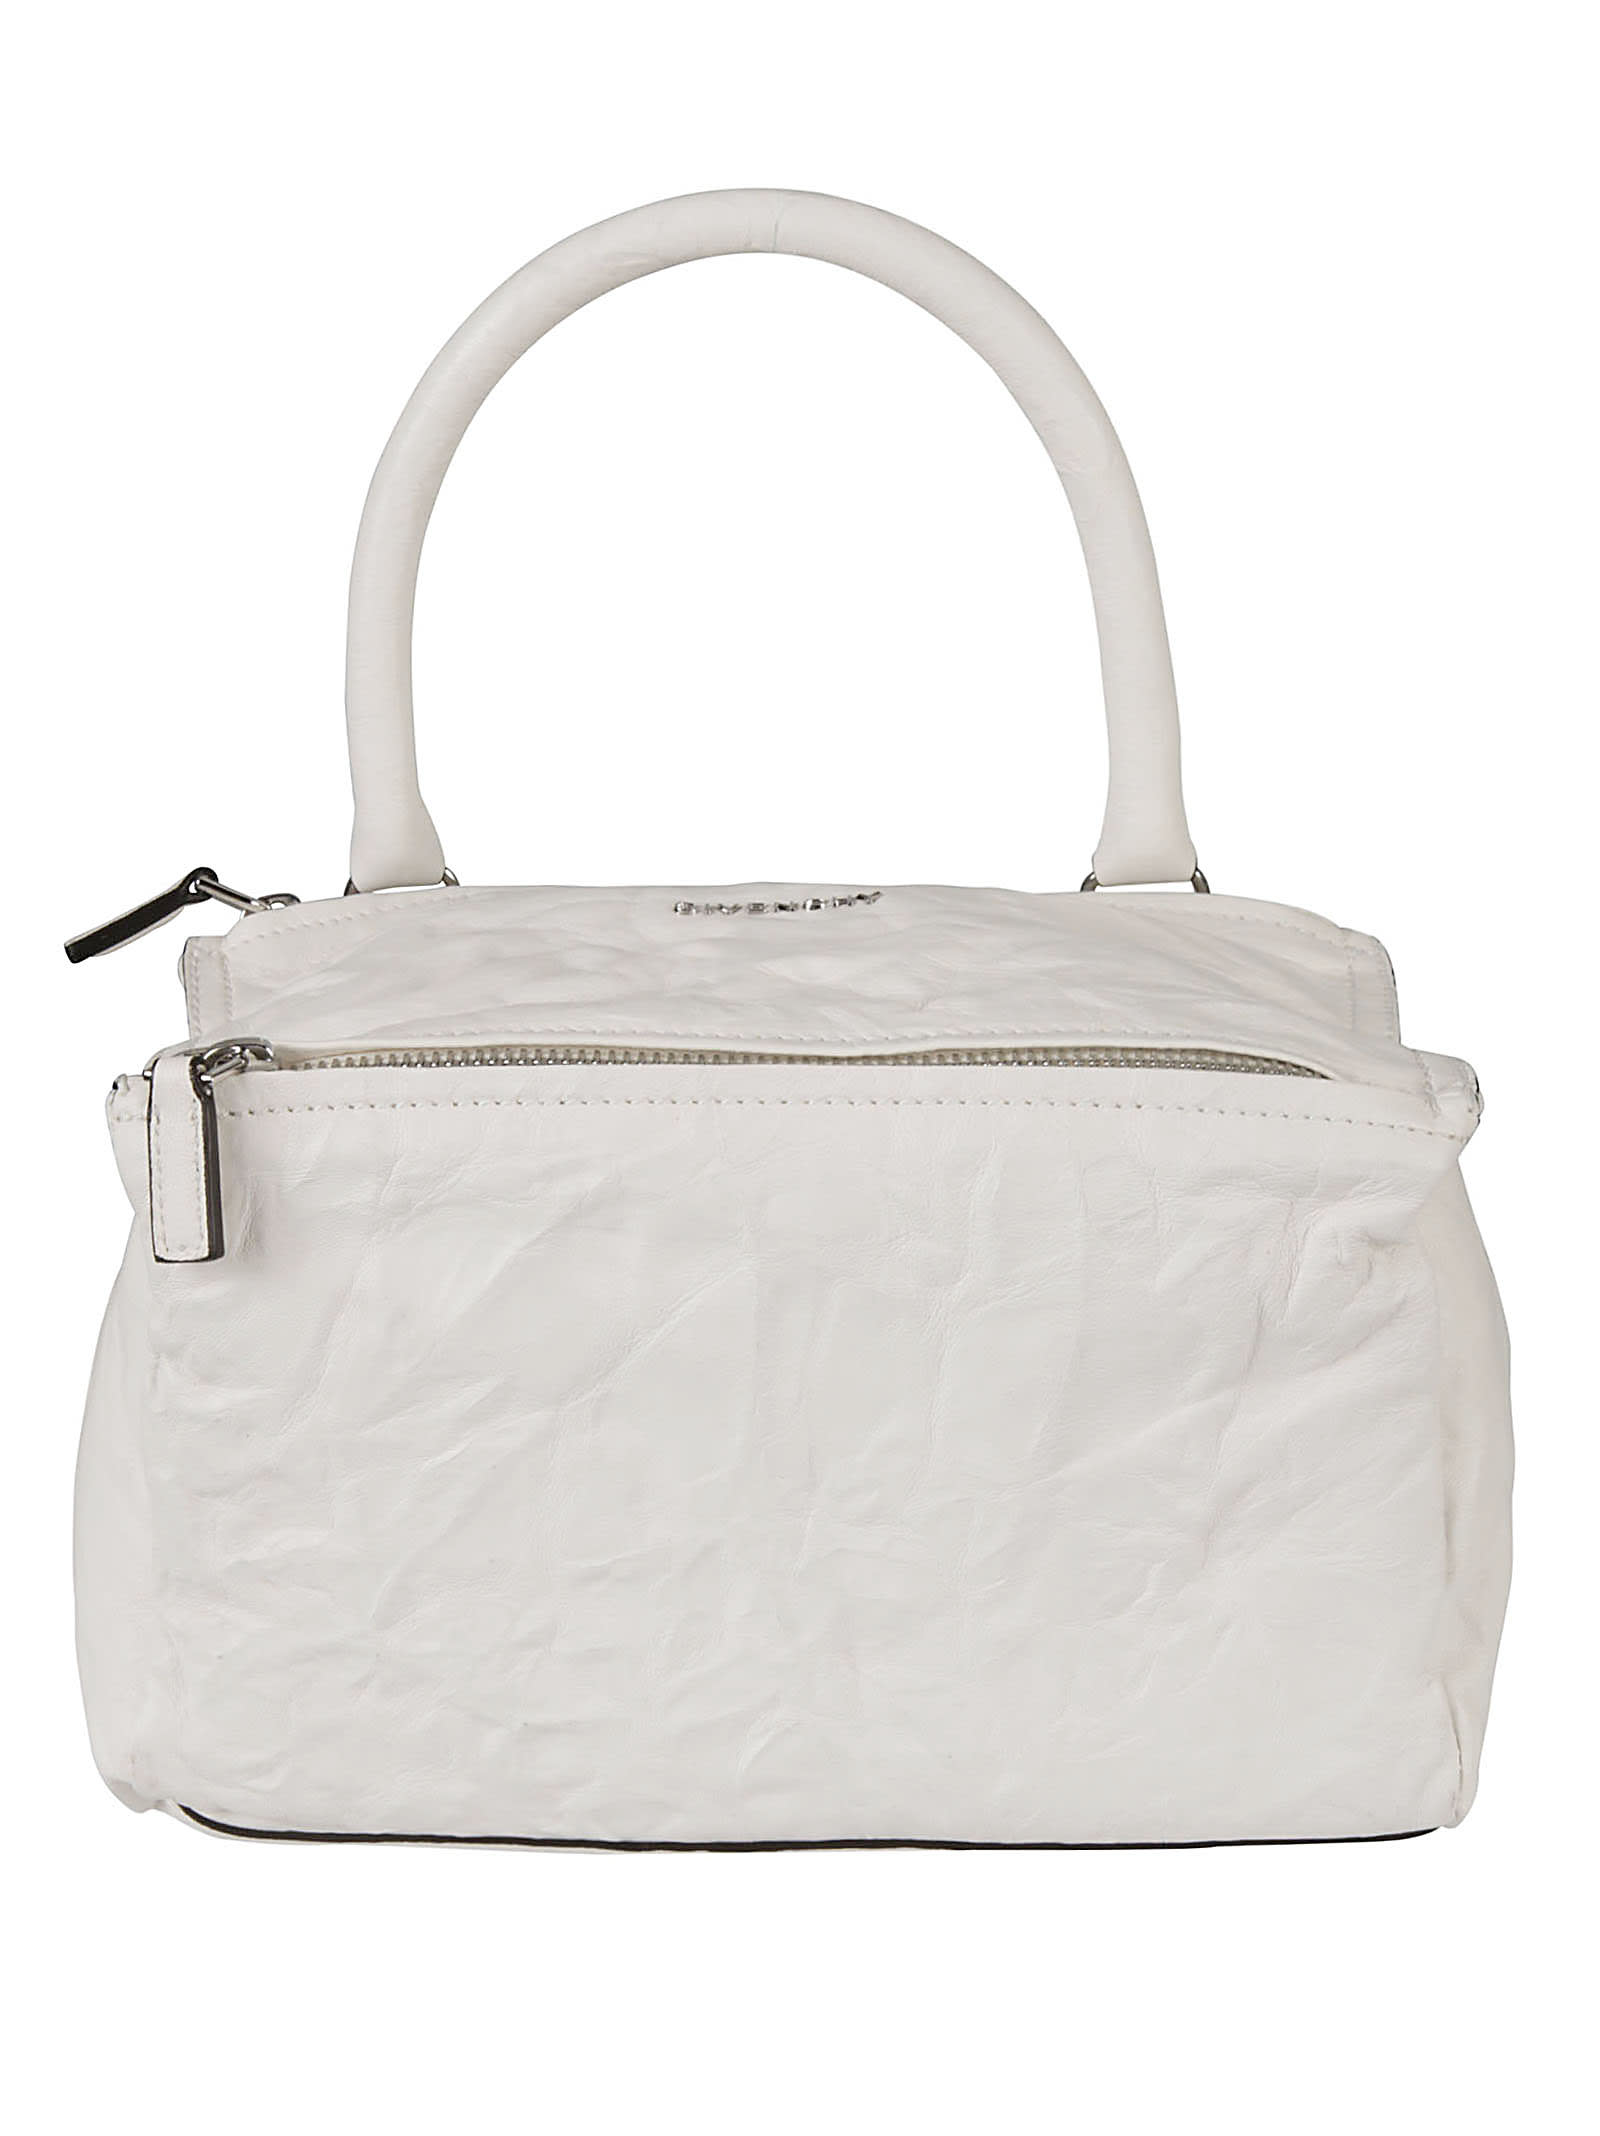 Givenchy Pandora Shoulder Bag In Ivory